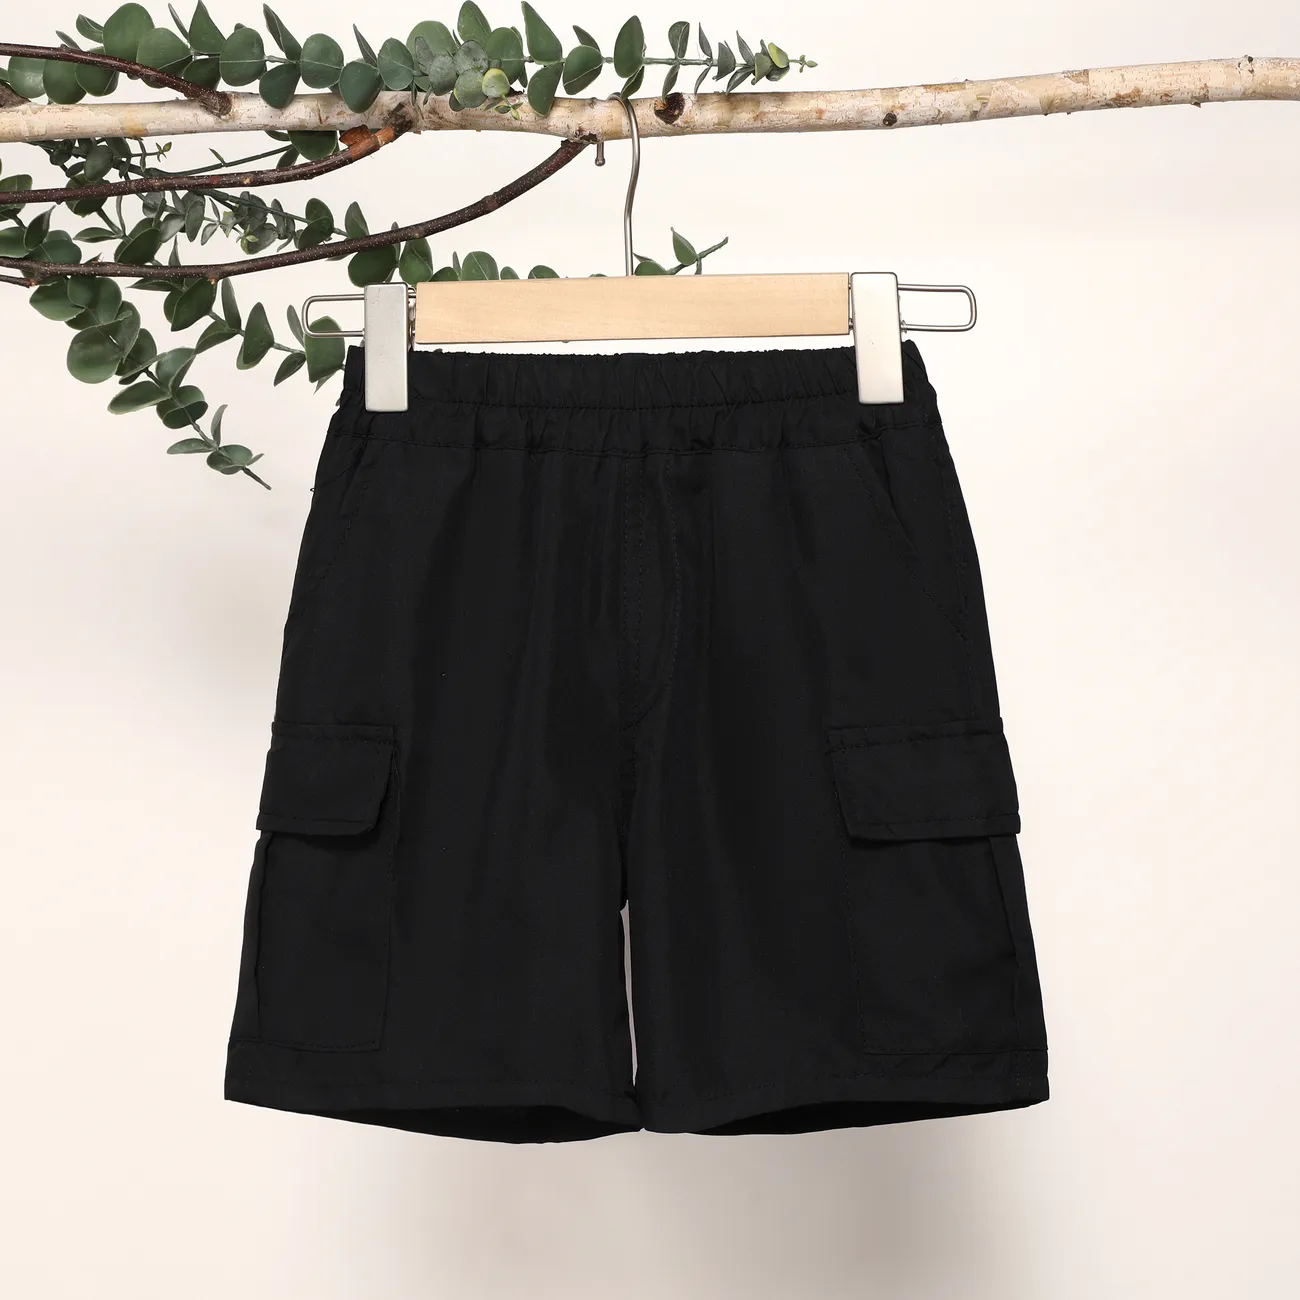 Lässige Shorts für Jungen mit aufgesetzten Taschen, 1-teiliges Set, einfarbig, 100% Polyester, maschinenwaschbar schwarz big image 1